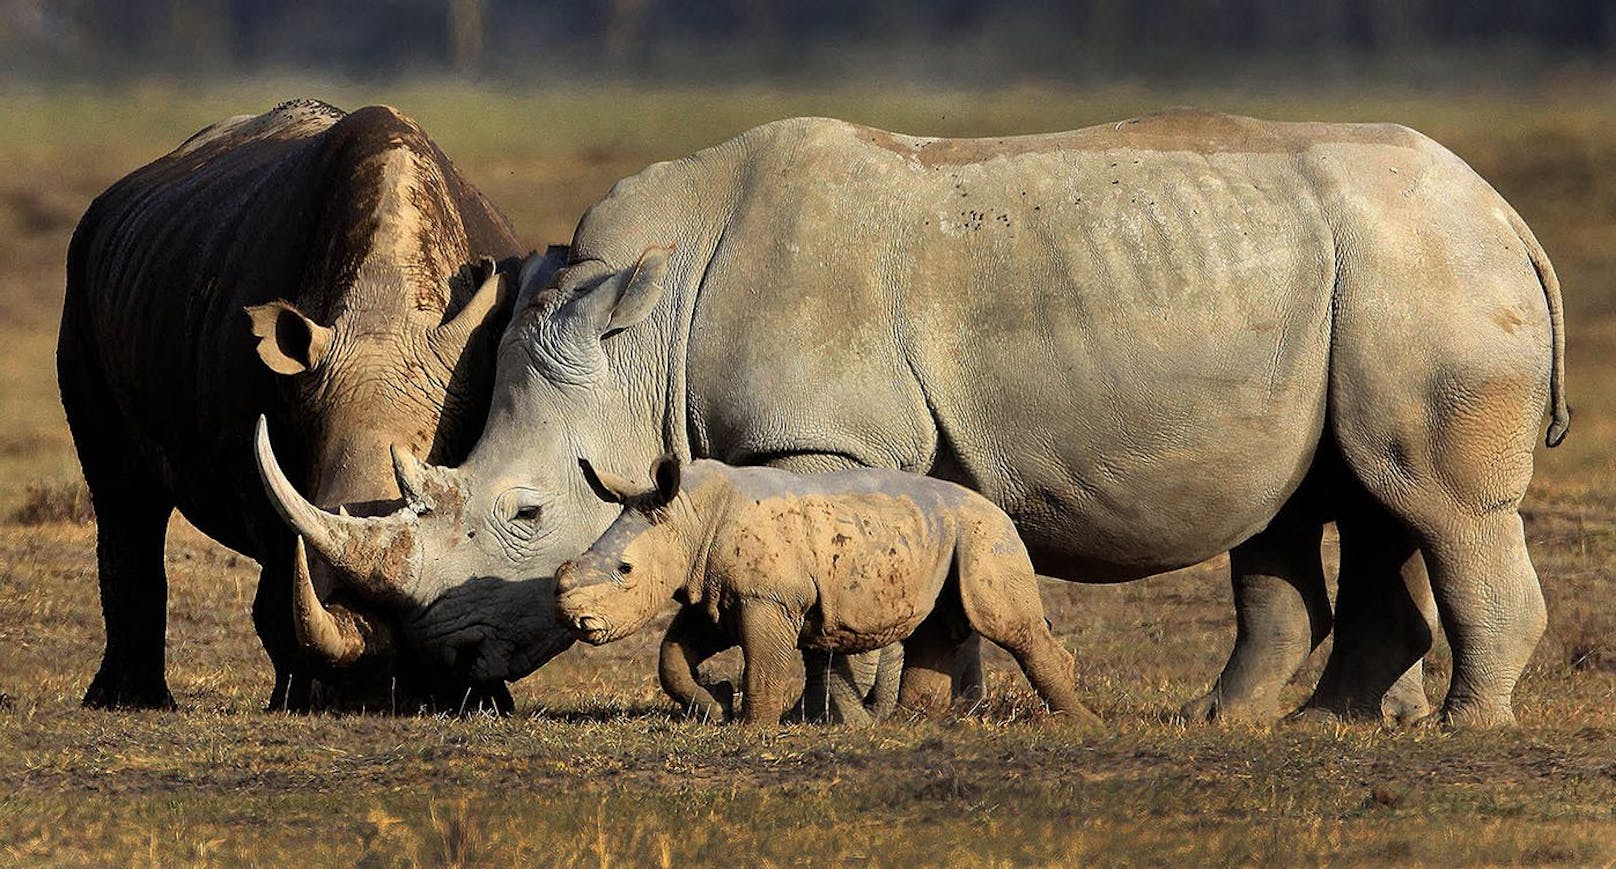 Die Nashornfarm "Platinum Rhino" hat einen neuen Besitzer: Die Naturschutzorganisation "African Parks".